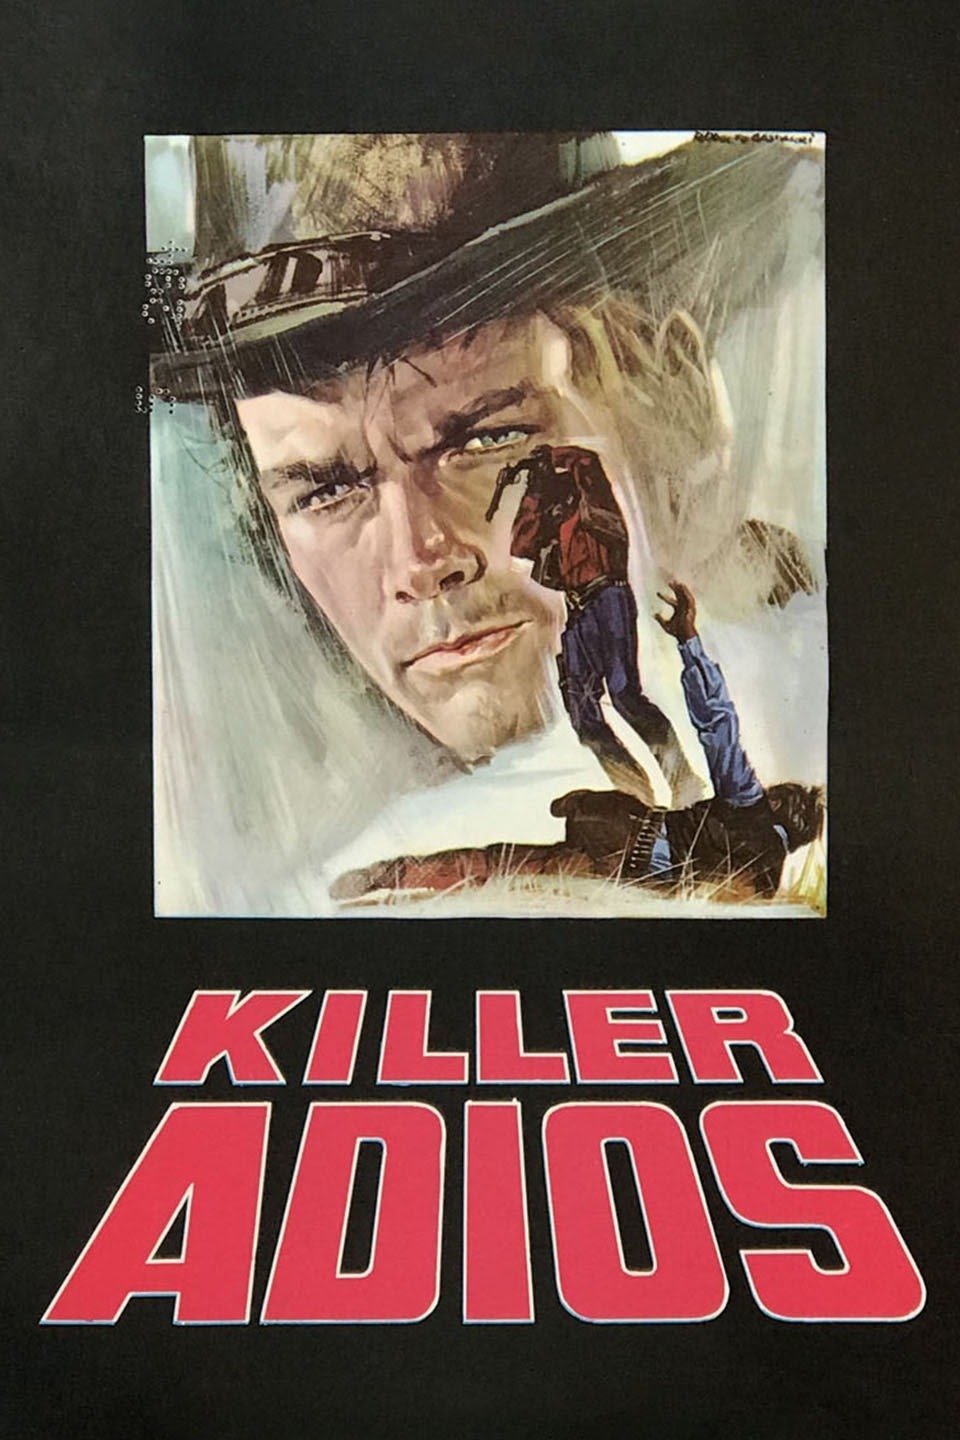 فيلم Killer Goodbye / Killer, adios 1968 مترجم اونلاين